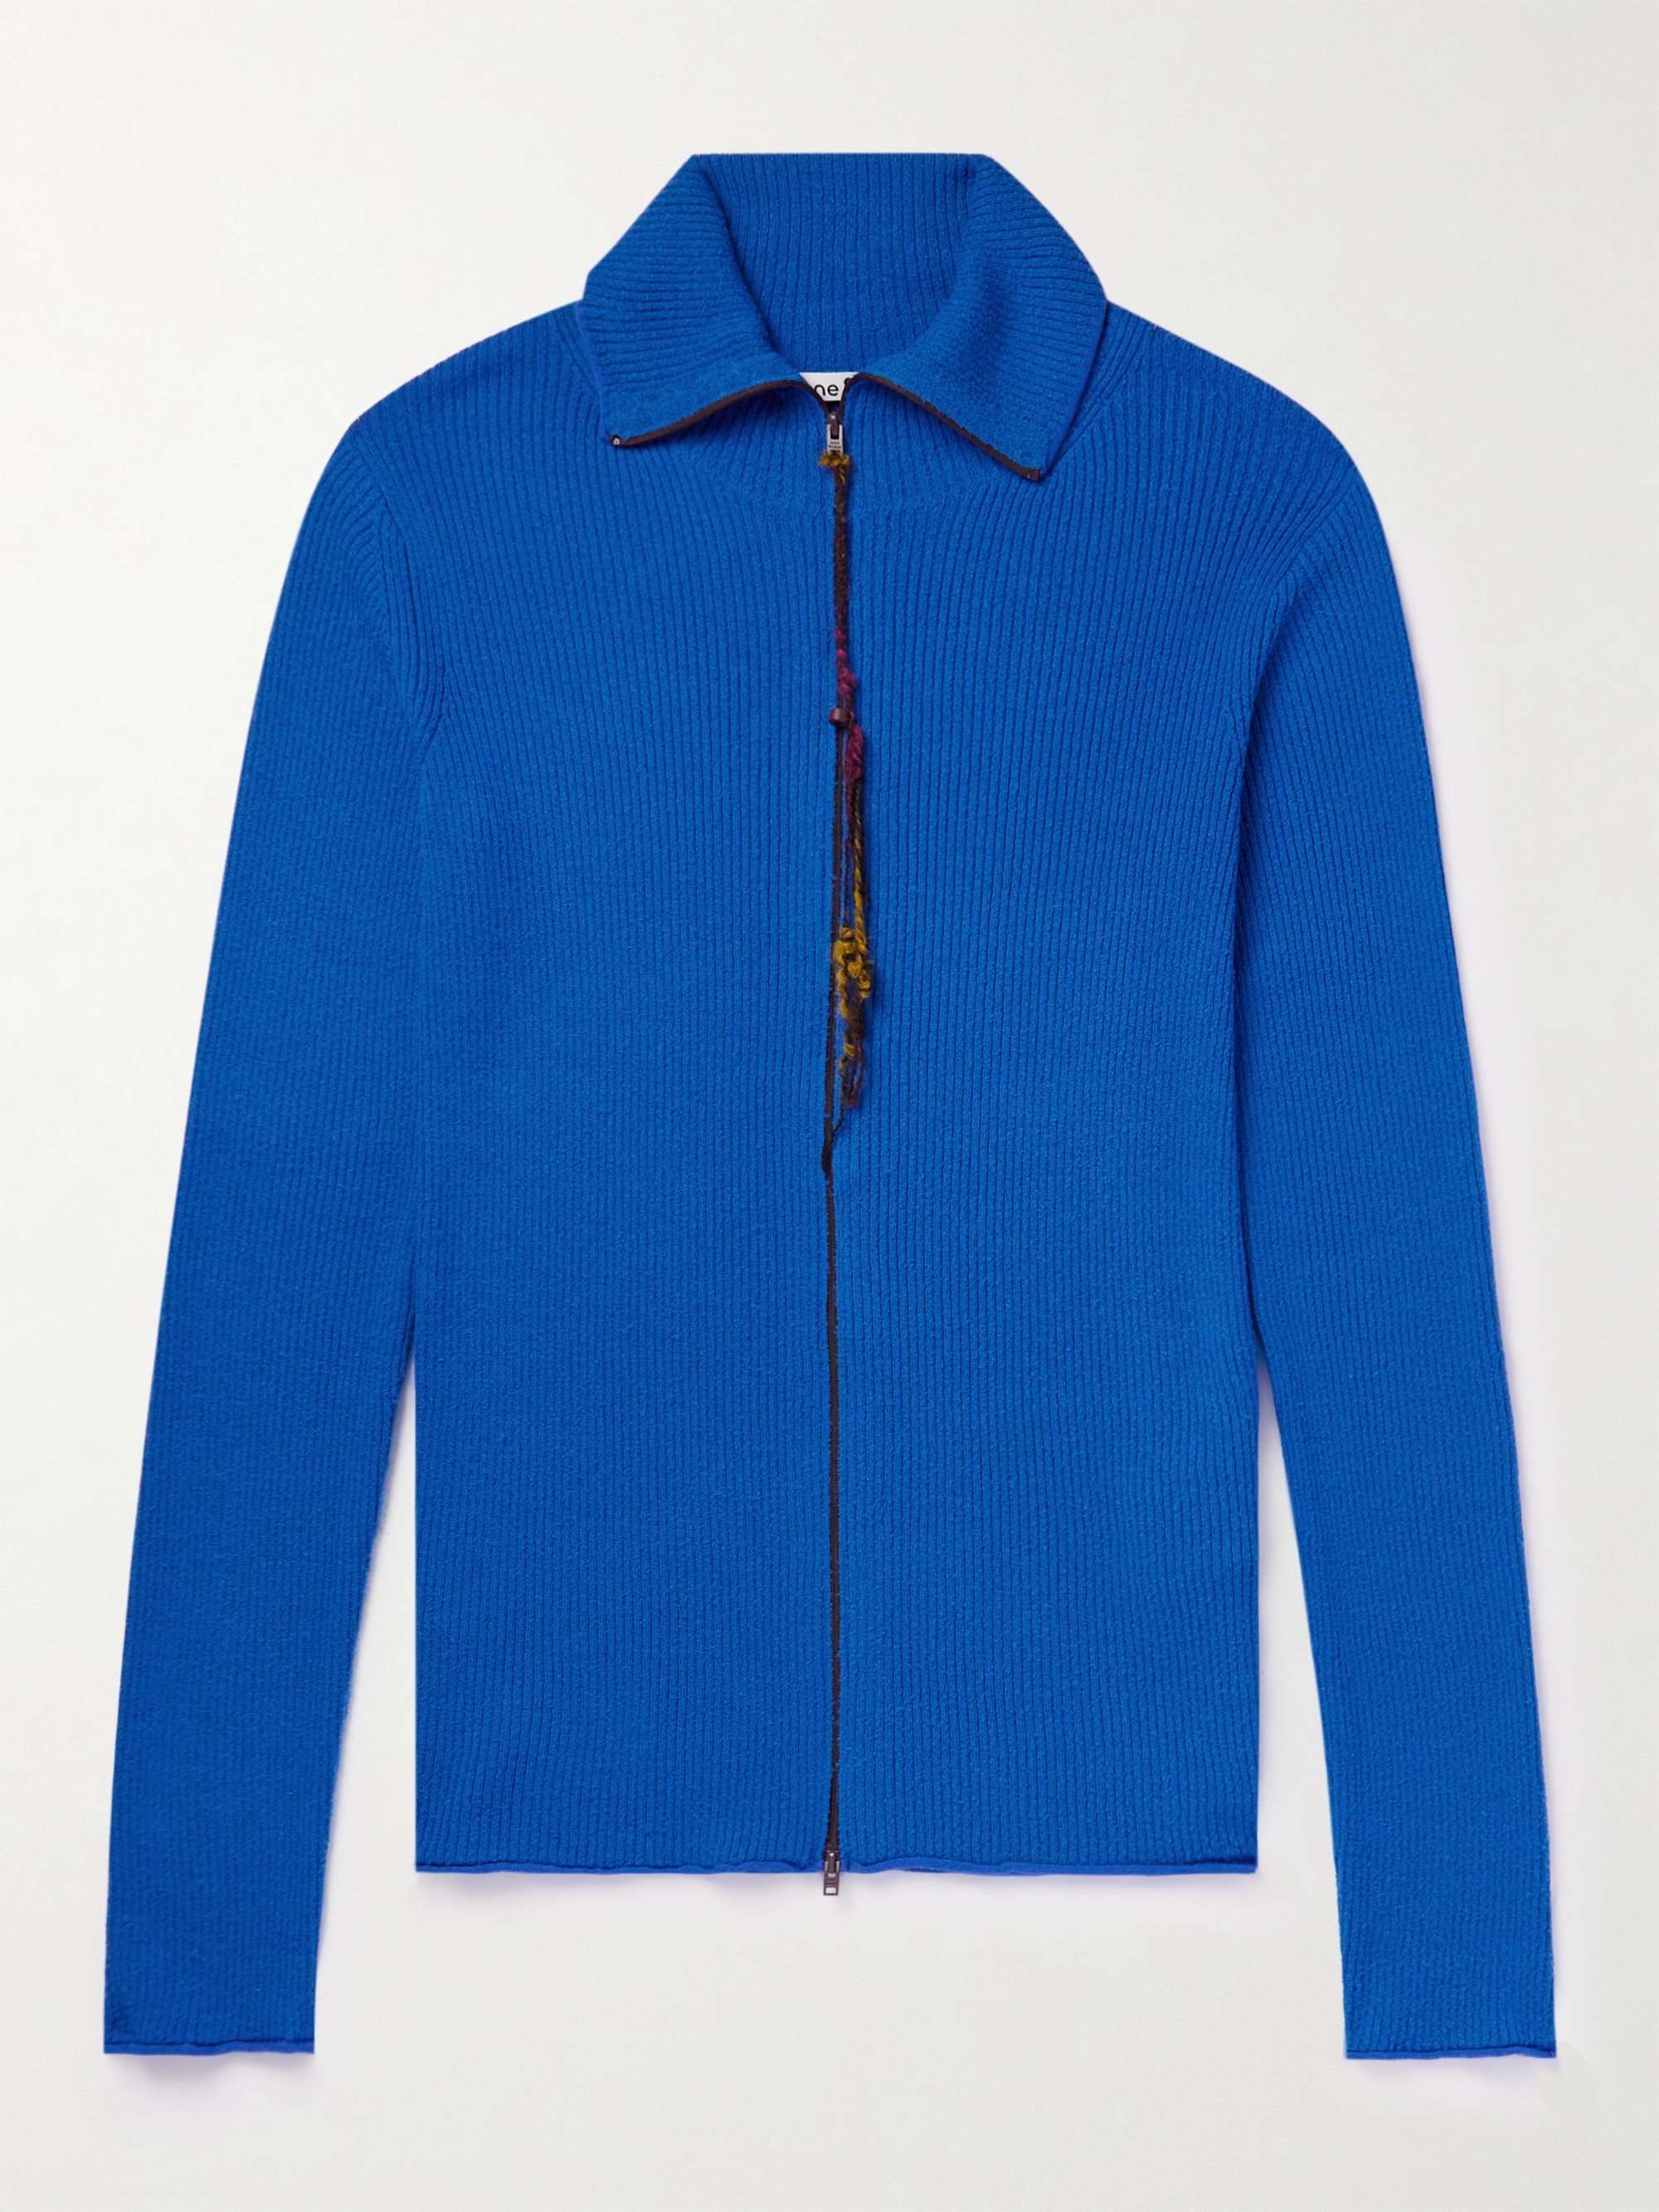 ACNE STUDIOS Kermeer Slim-Fit Ribbed-Knit Zip-Up Cardigan,Bright blue